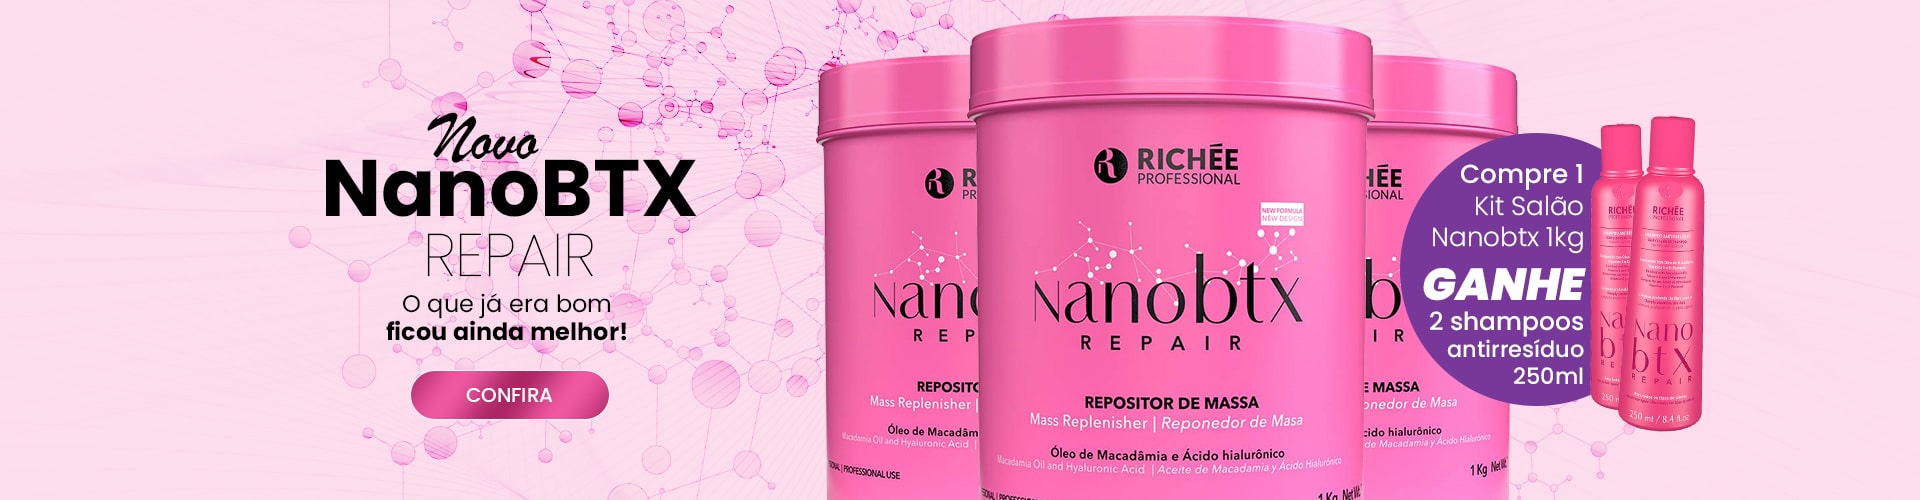 Novo Nanobtx Repair com brindes exclusivos